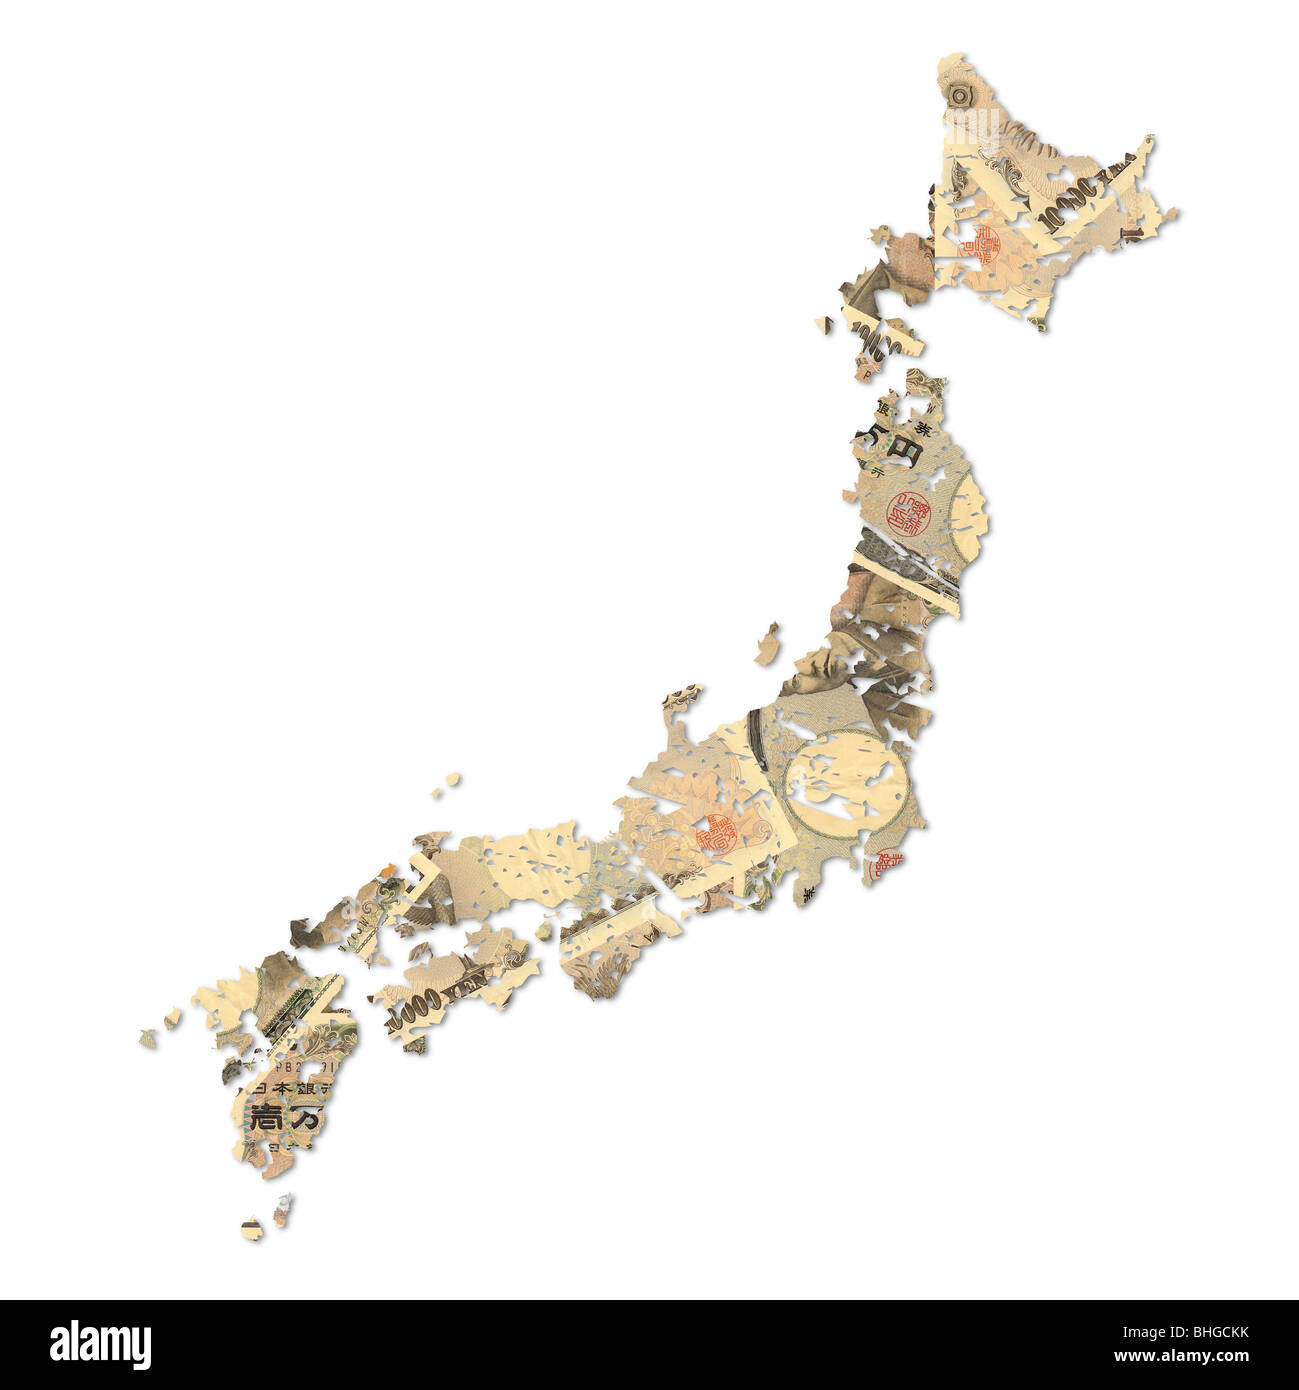 grunge Japan map with Japanese Yen on white illustration Stock Photo